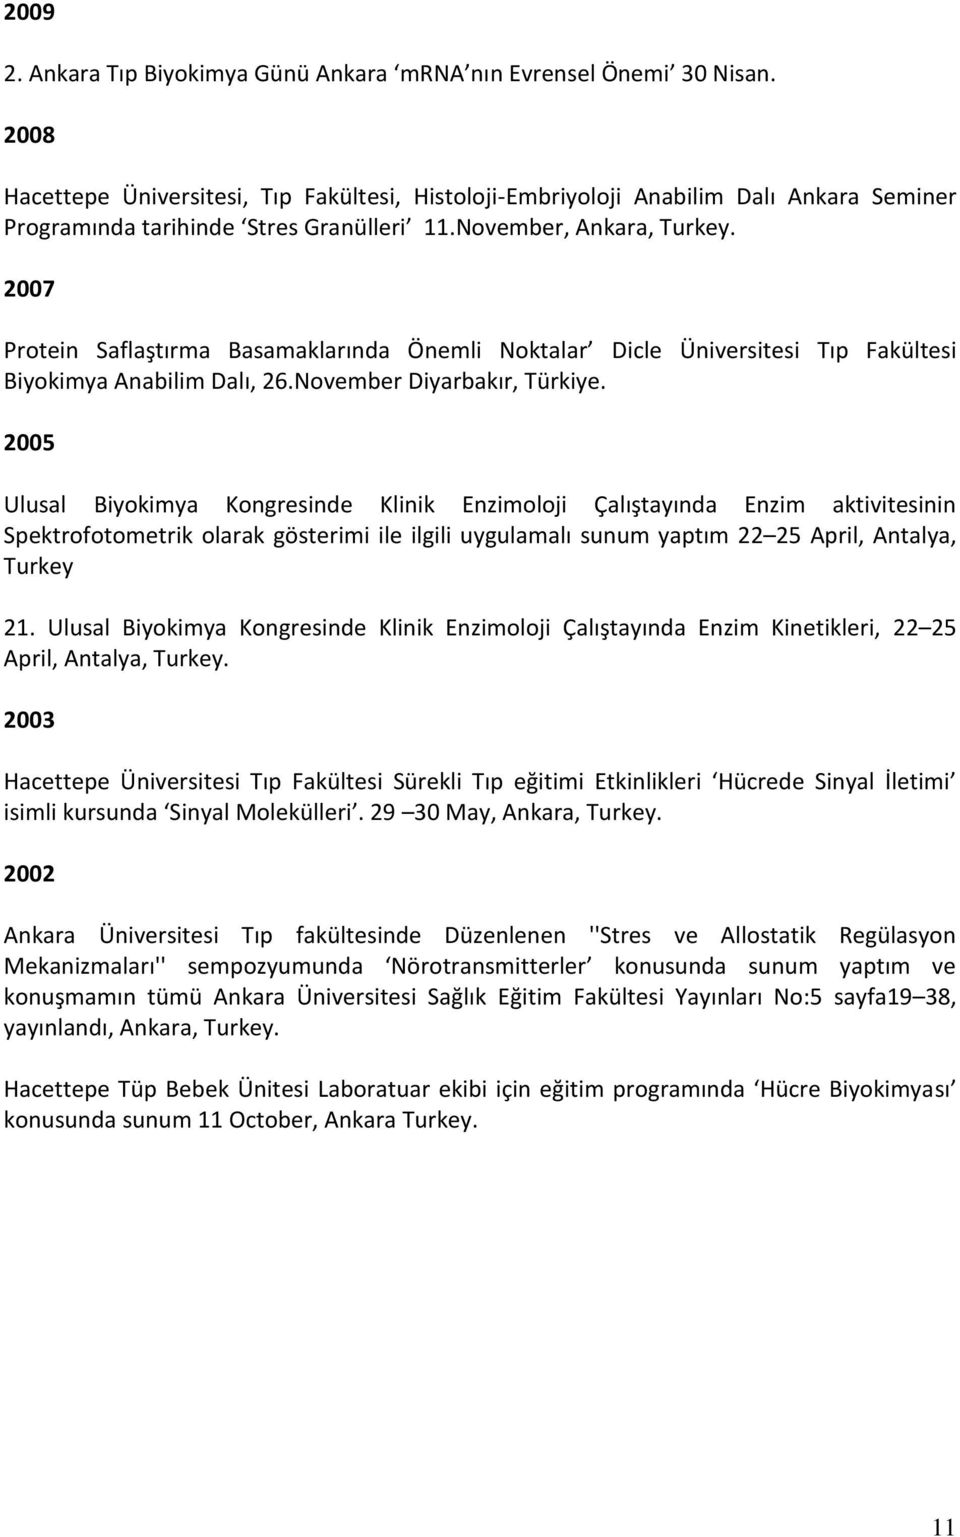 2007 Protein Saflaştırma Basamaklarında Önemli Noktalar Dicle Üniversitesi Tıp Fakültesi Biyokimya Anabilim Dalı, 26.November Diyarbakır, Türkiye.